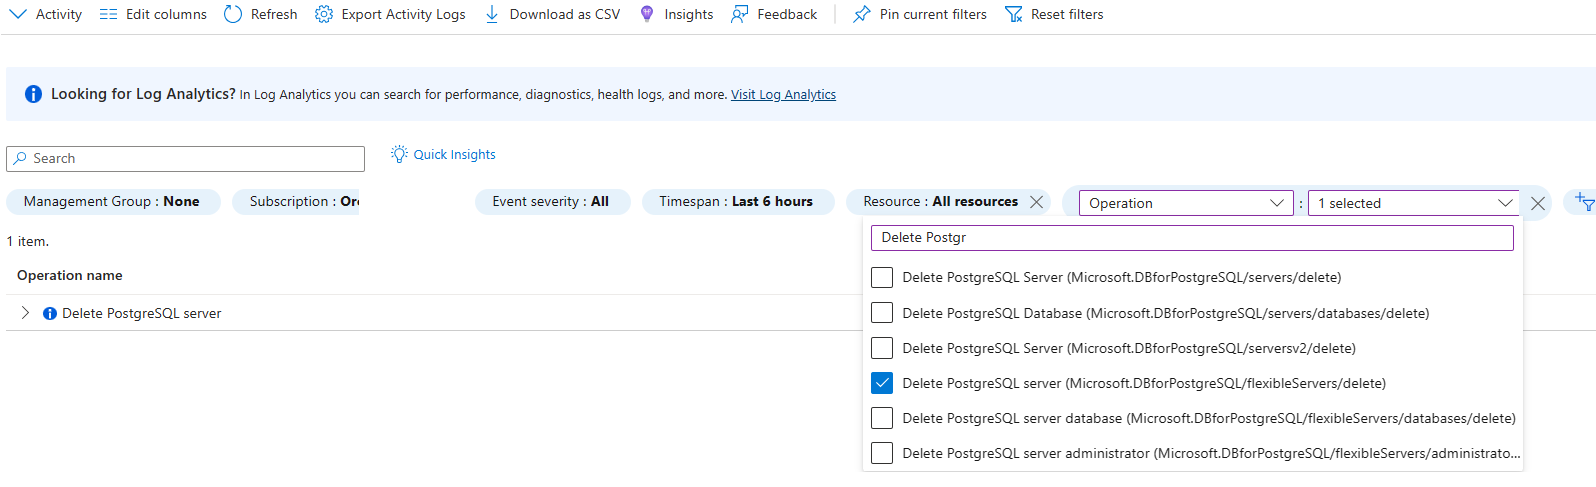 Screenshot showing activity log filtered for delete PostgreSQL server operation.